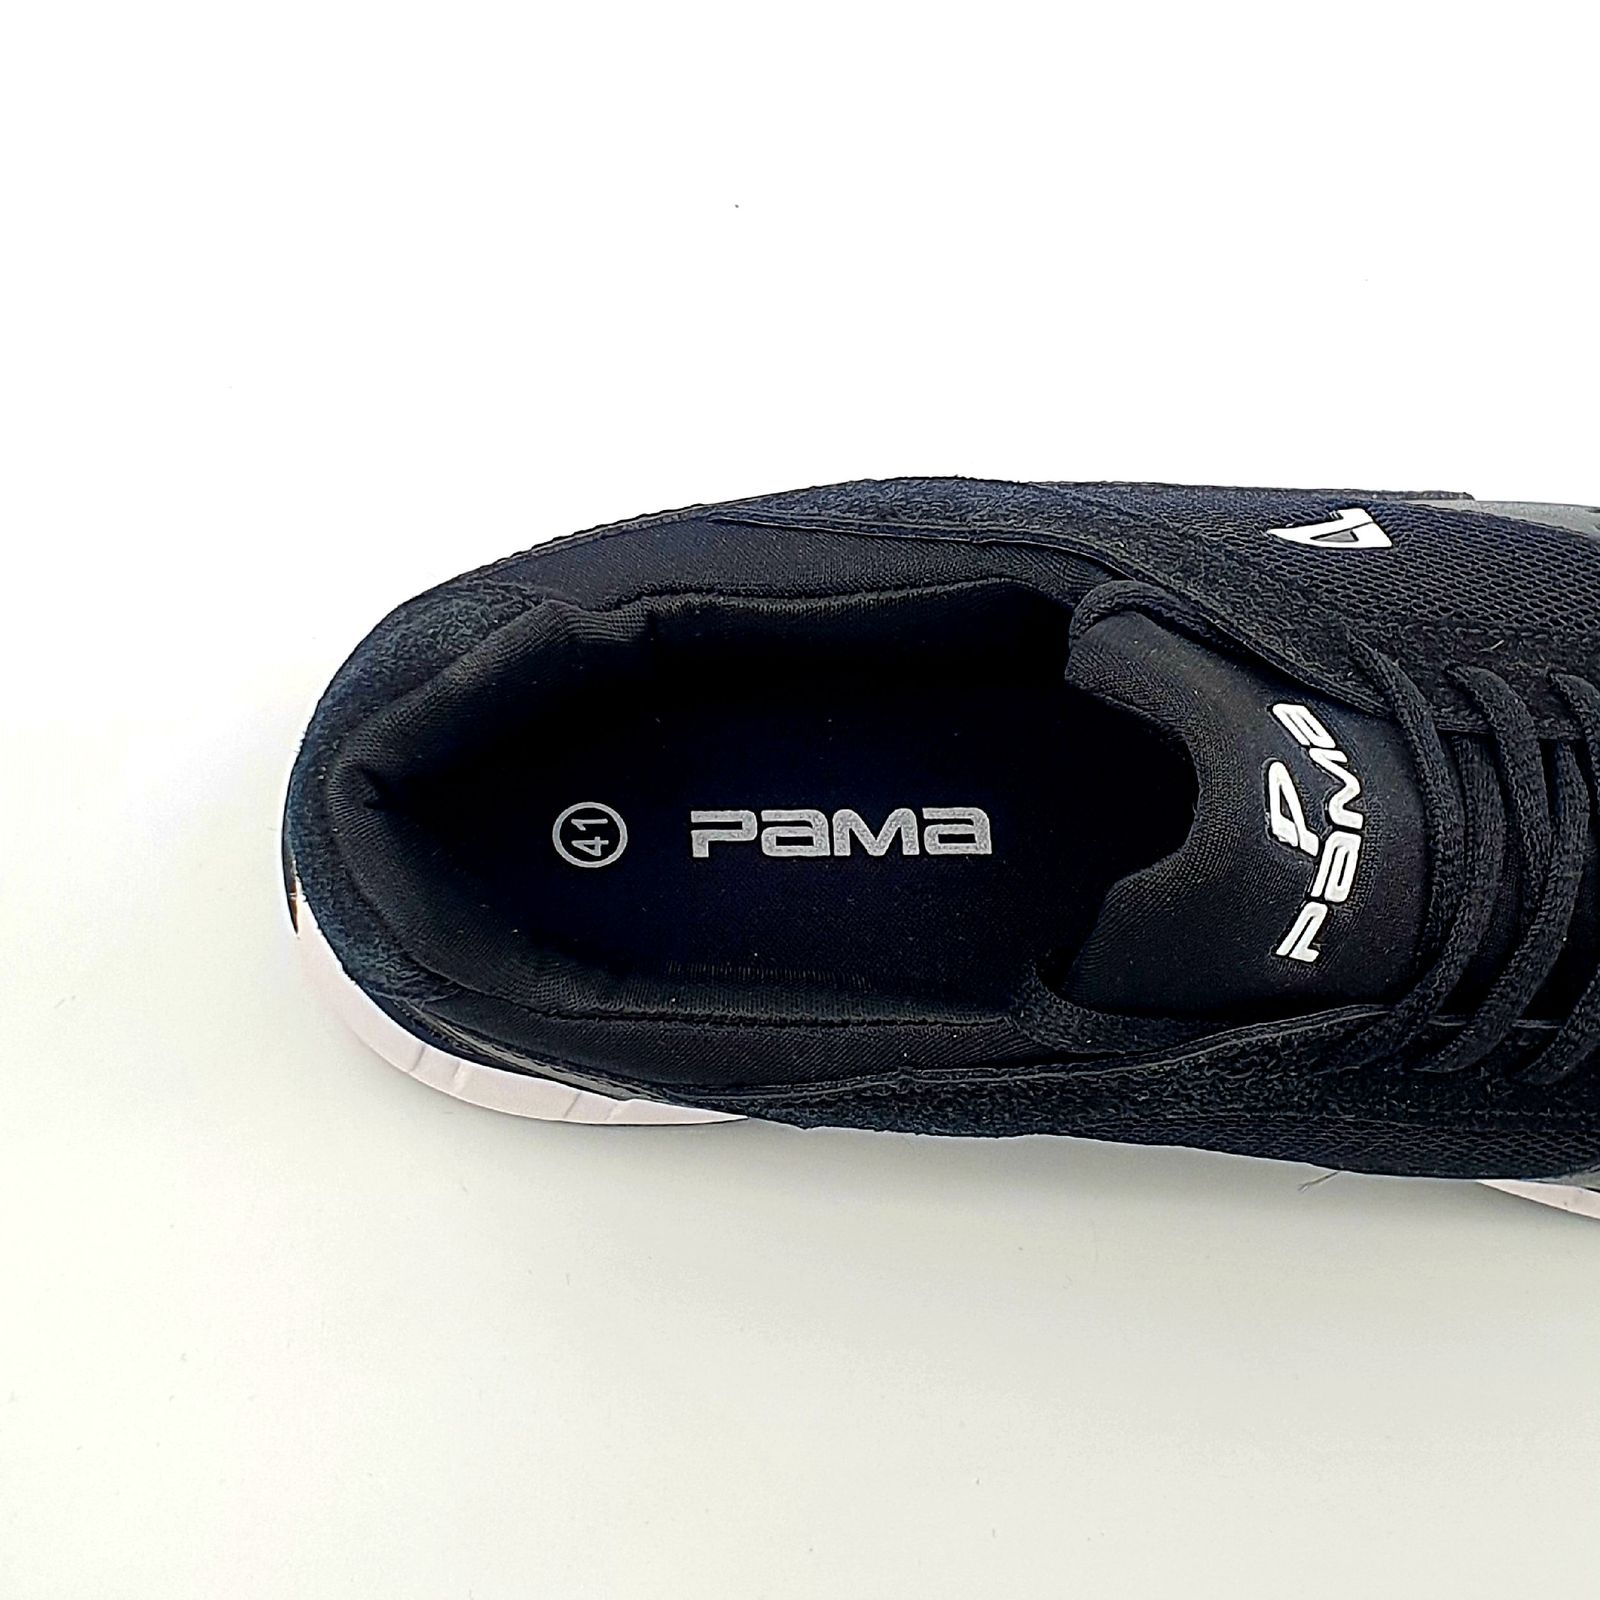 کفش پیاده روی مردانه پاما مدل VR-830 کد G1631 -  - 8